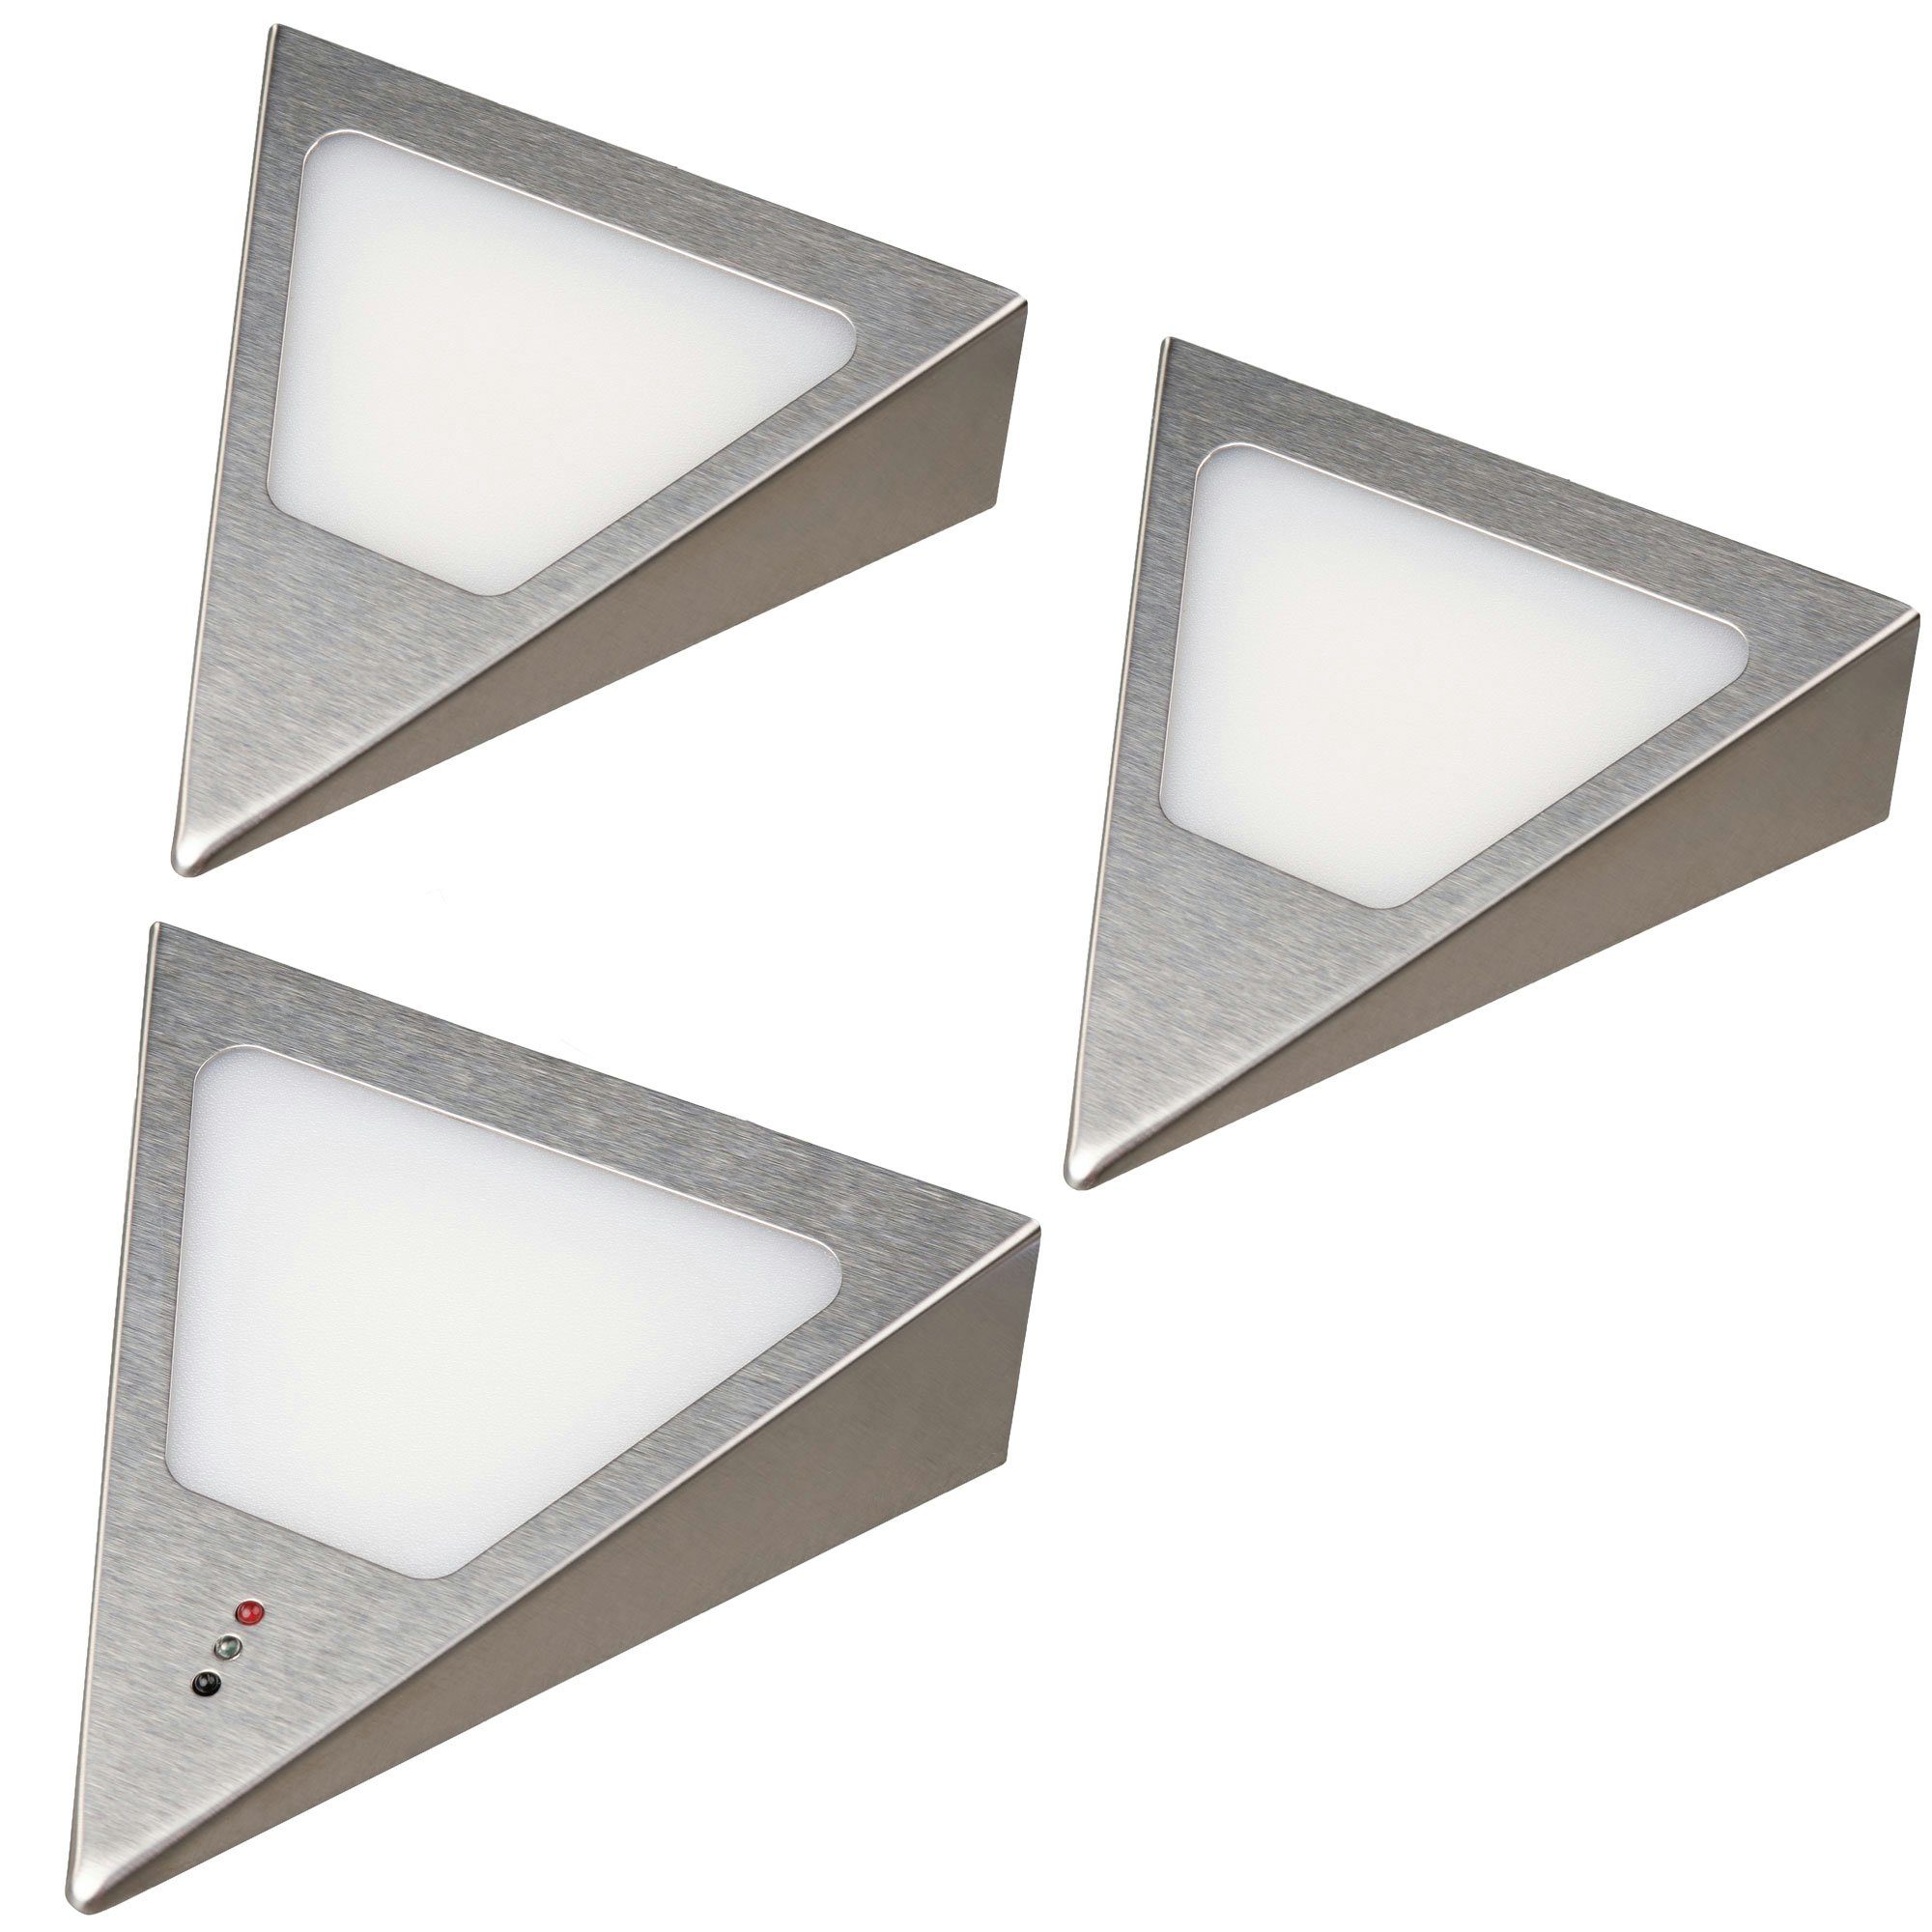 kalb LED Unterbauleuchte LED Unterbauleuchten Dreieck mit Sensor - Dimmer Edelstahl gebürstet, 3er Set warmweiss, warmweiß